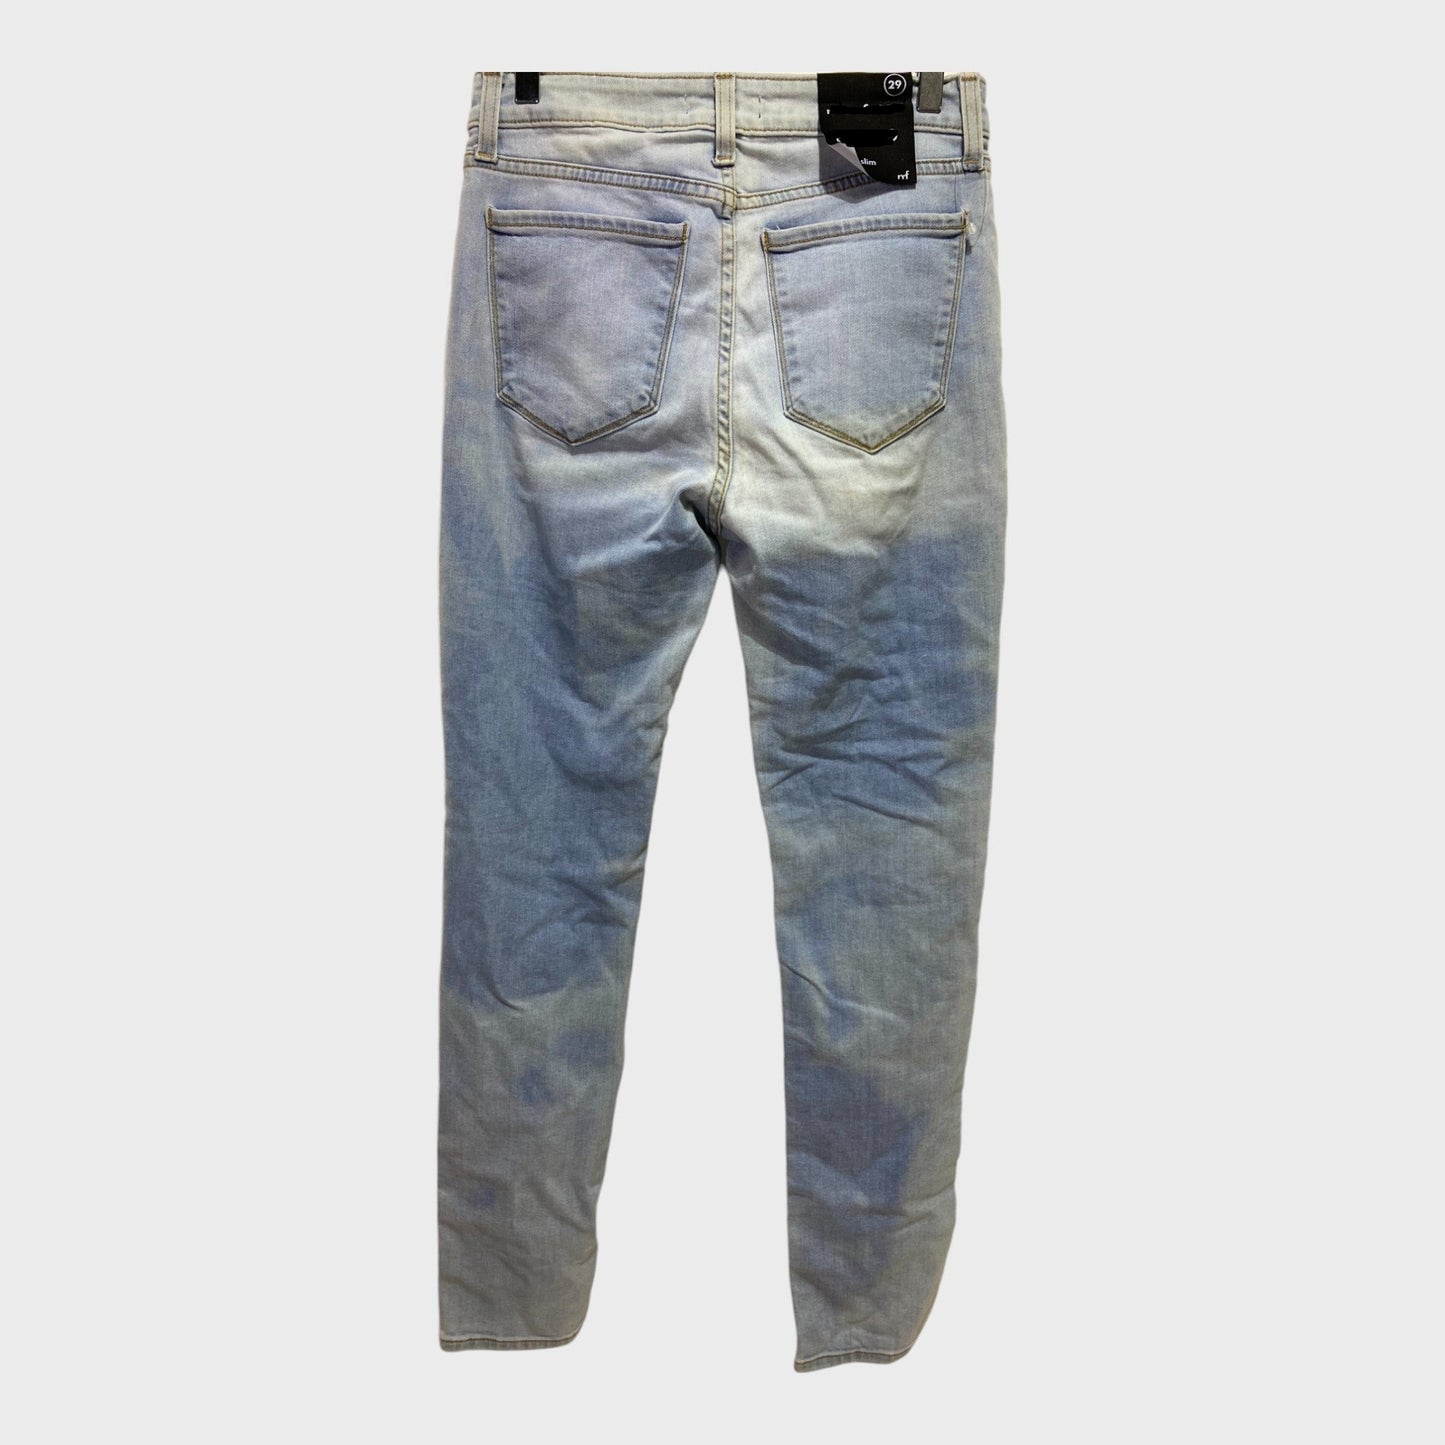 Men's Branded Slim Fit Light Wash Jeans